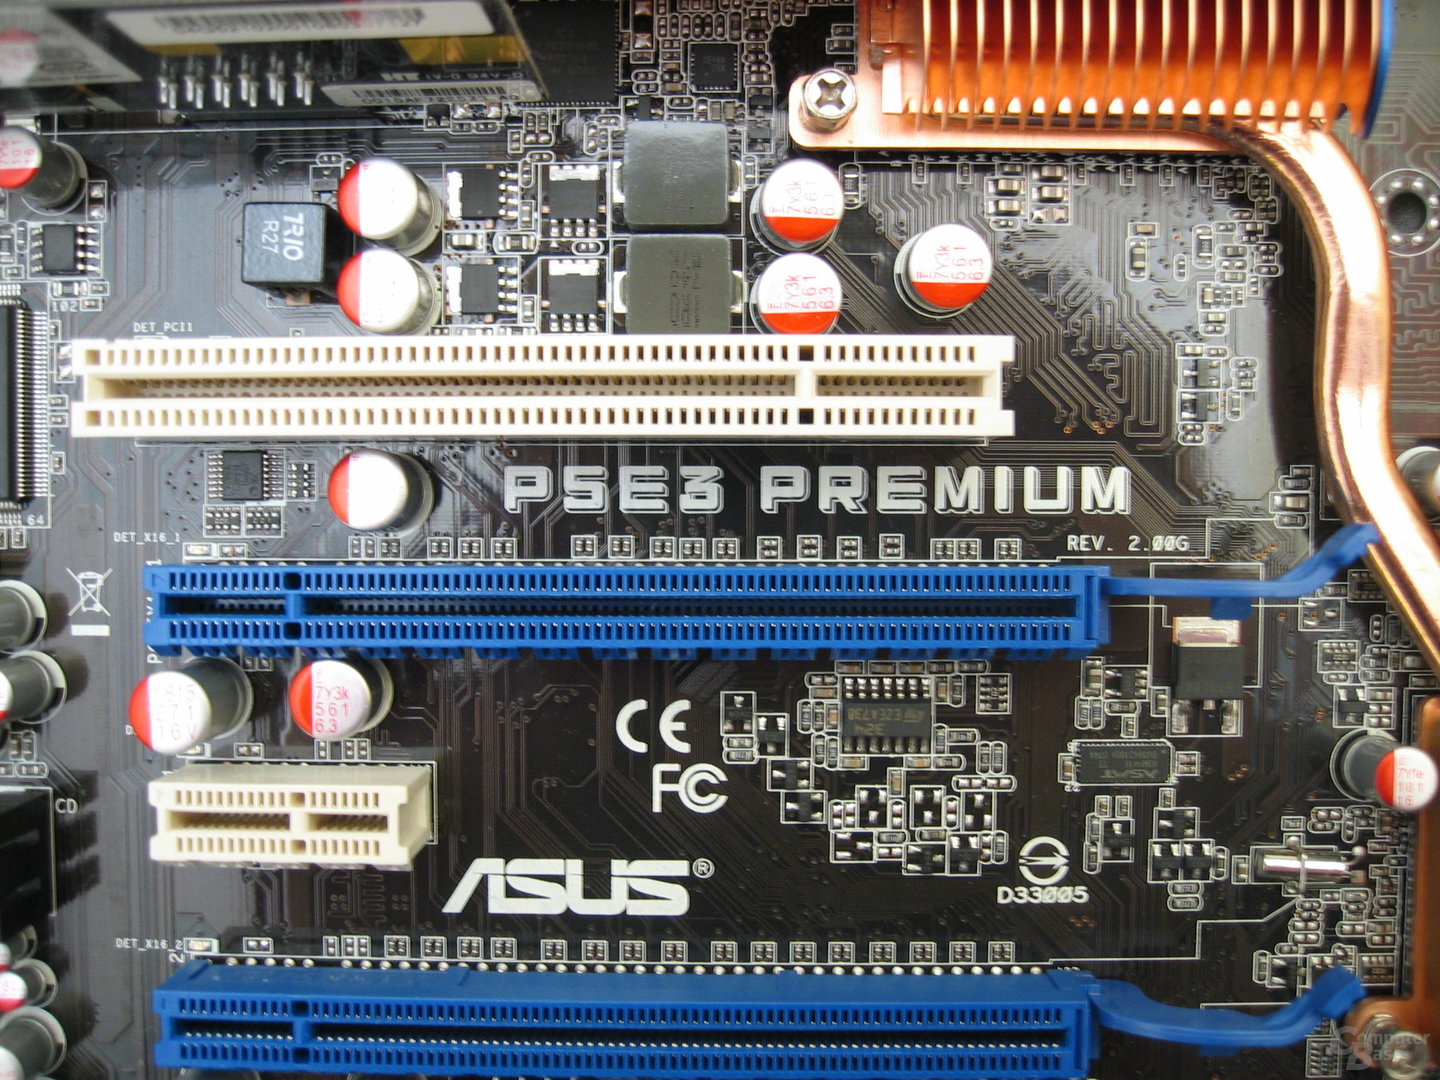 Asus P5E3 Premium